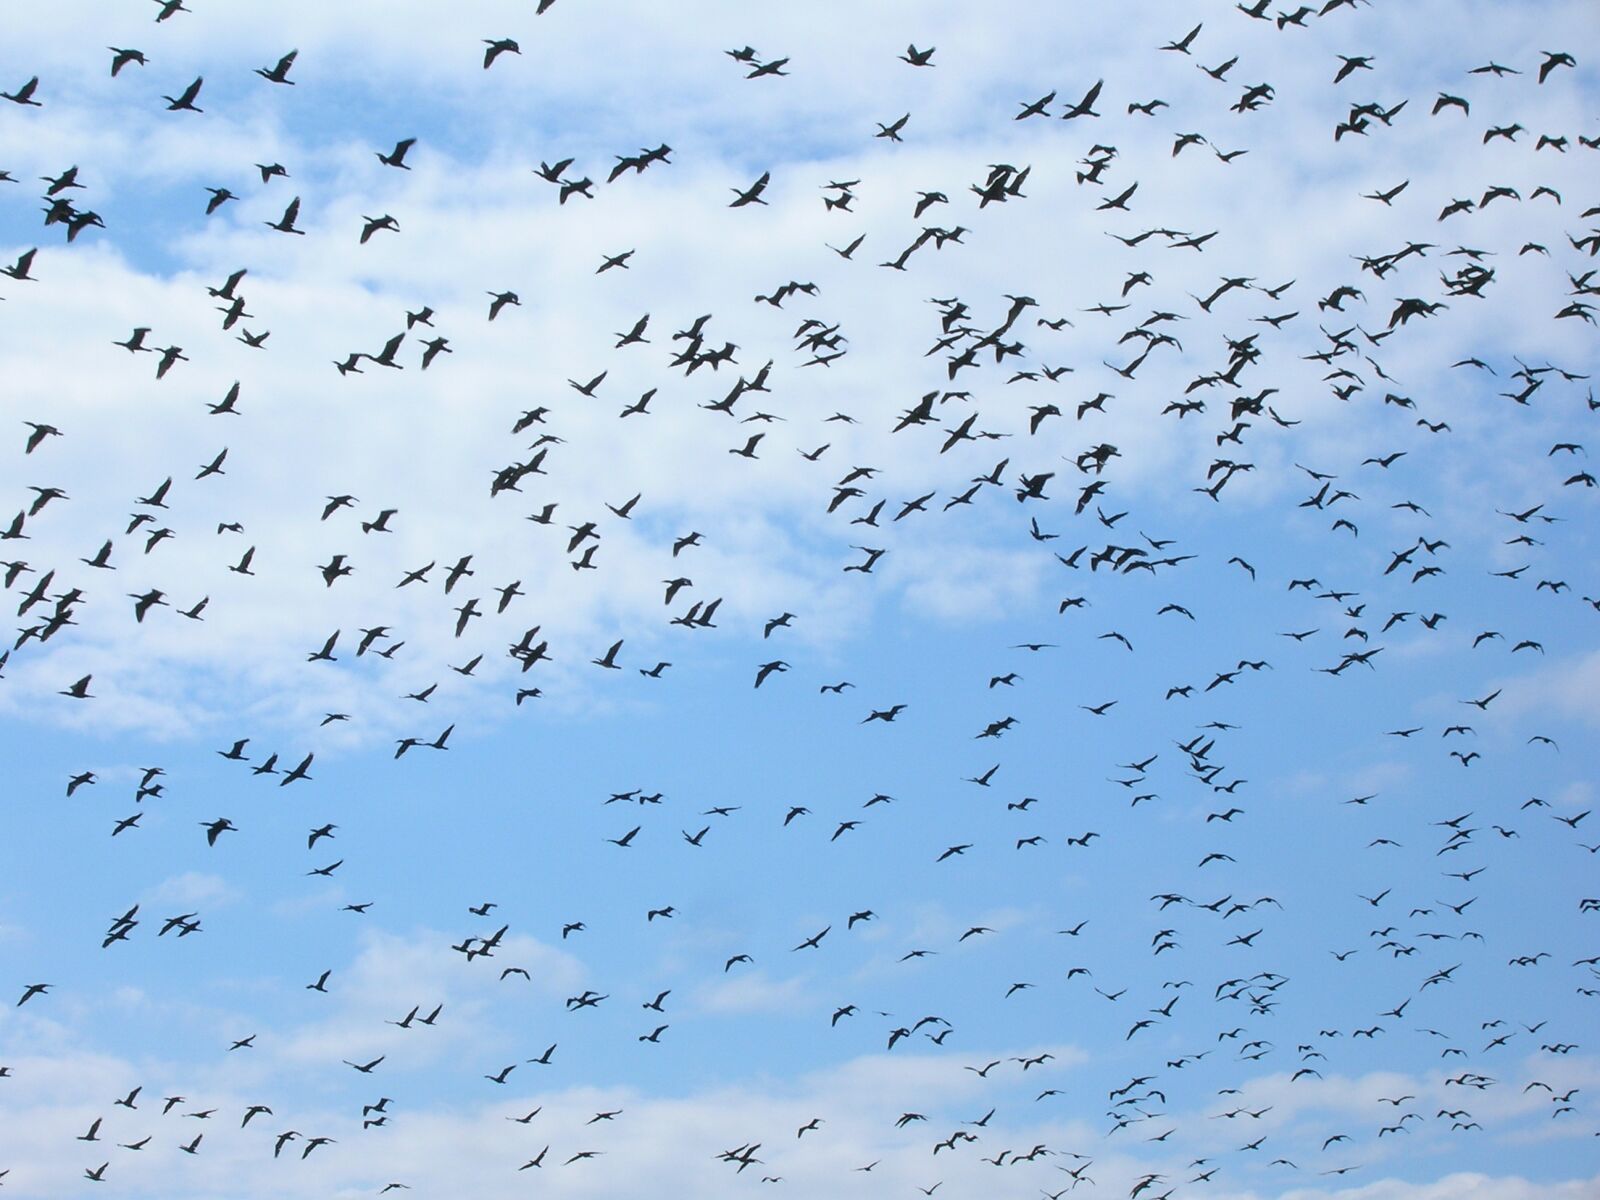 Nikon E5600 sample photo. Birds in the sky photography